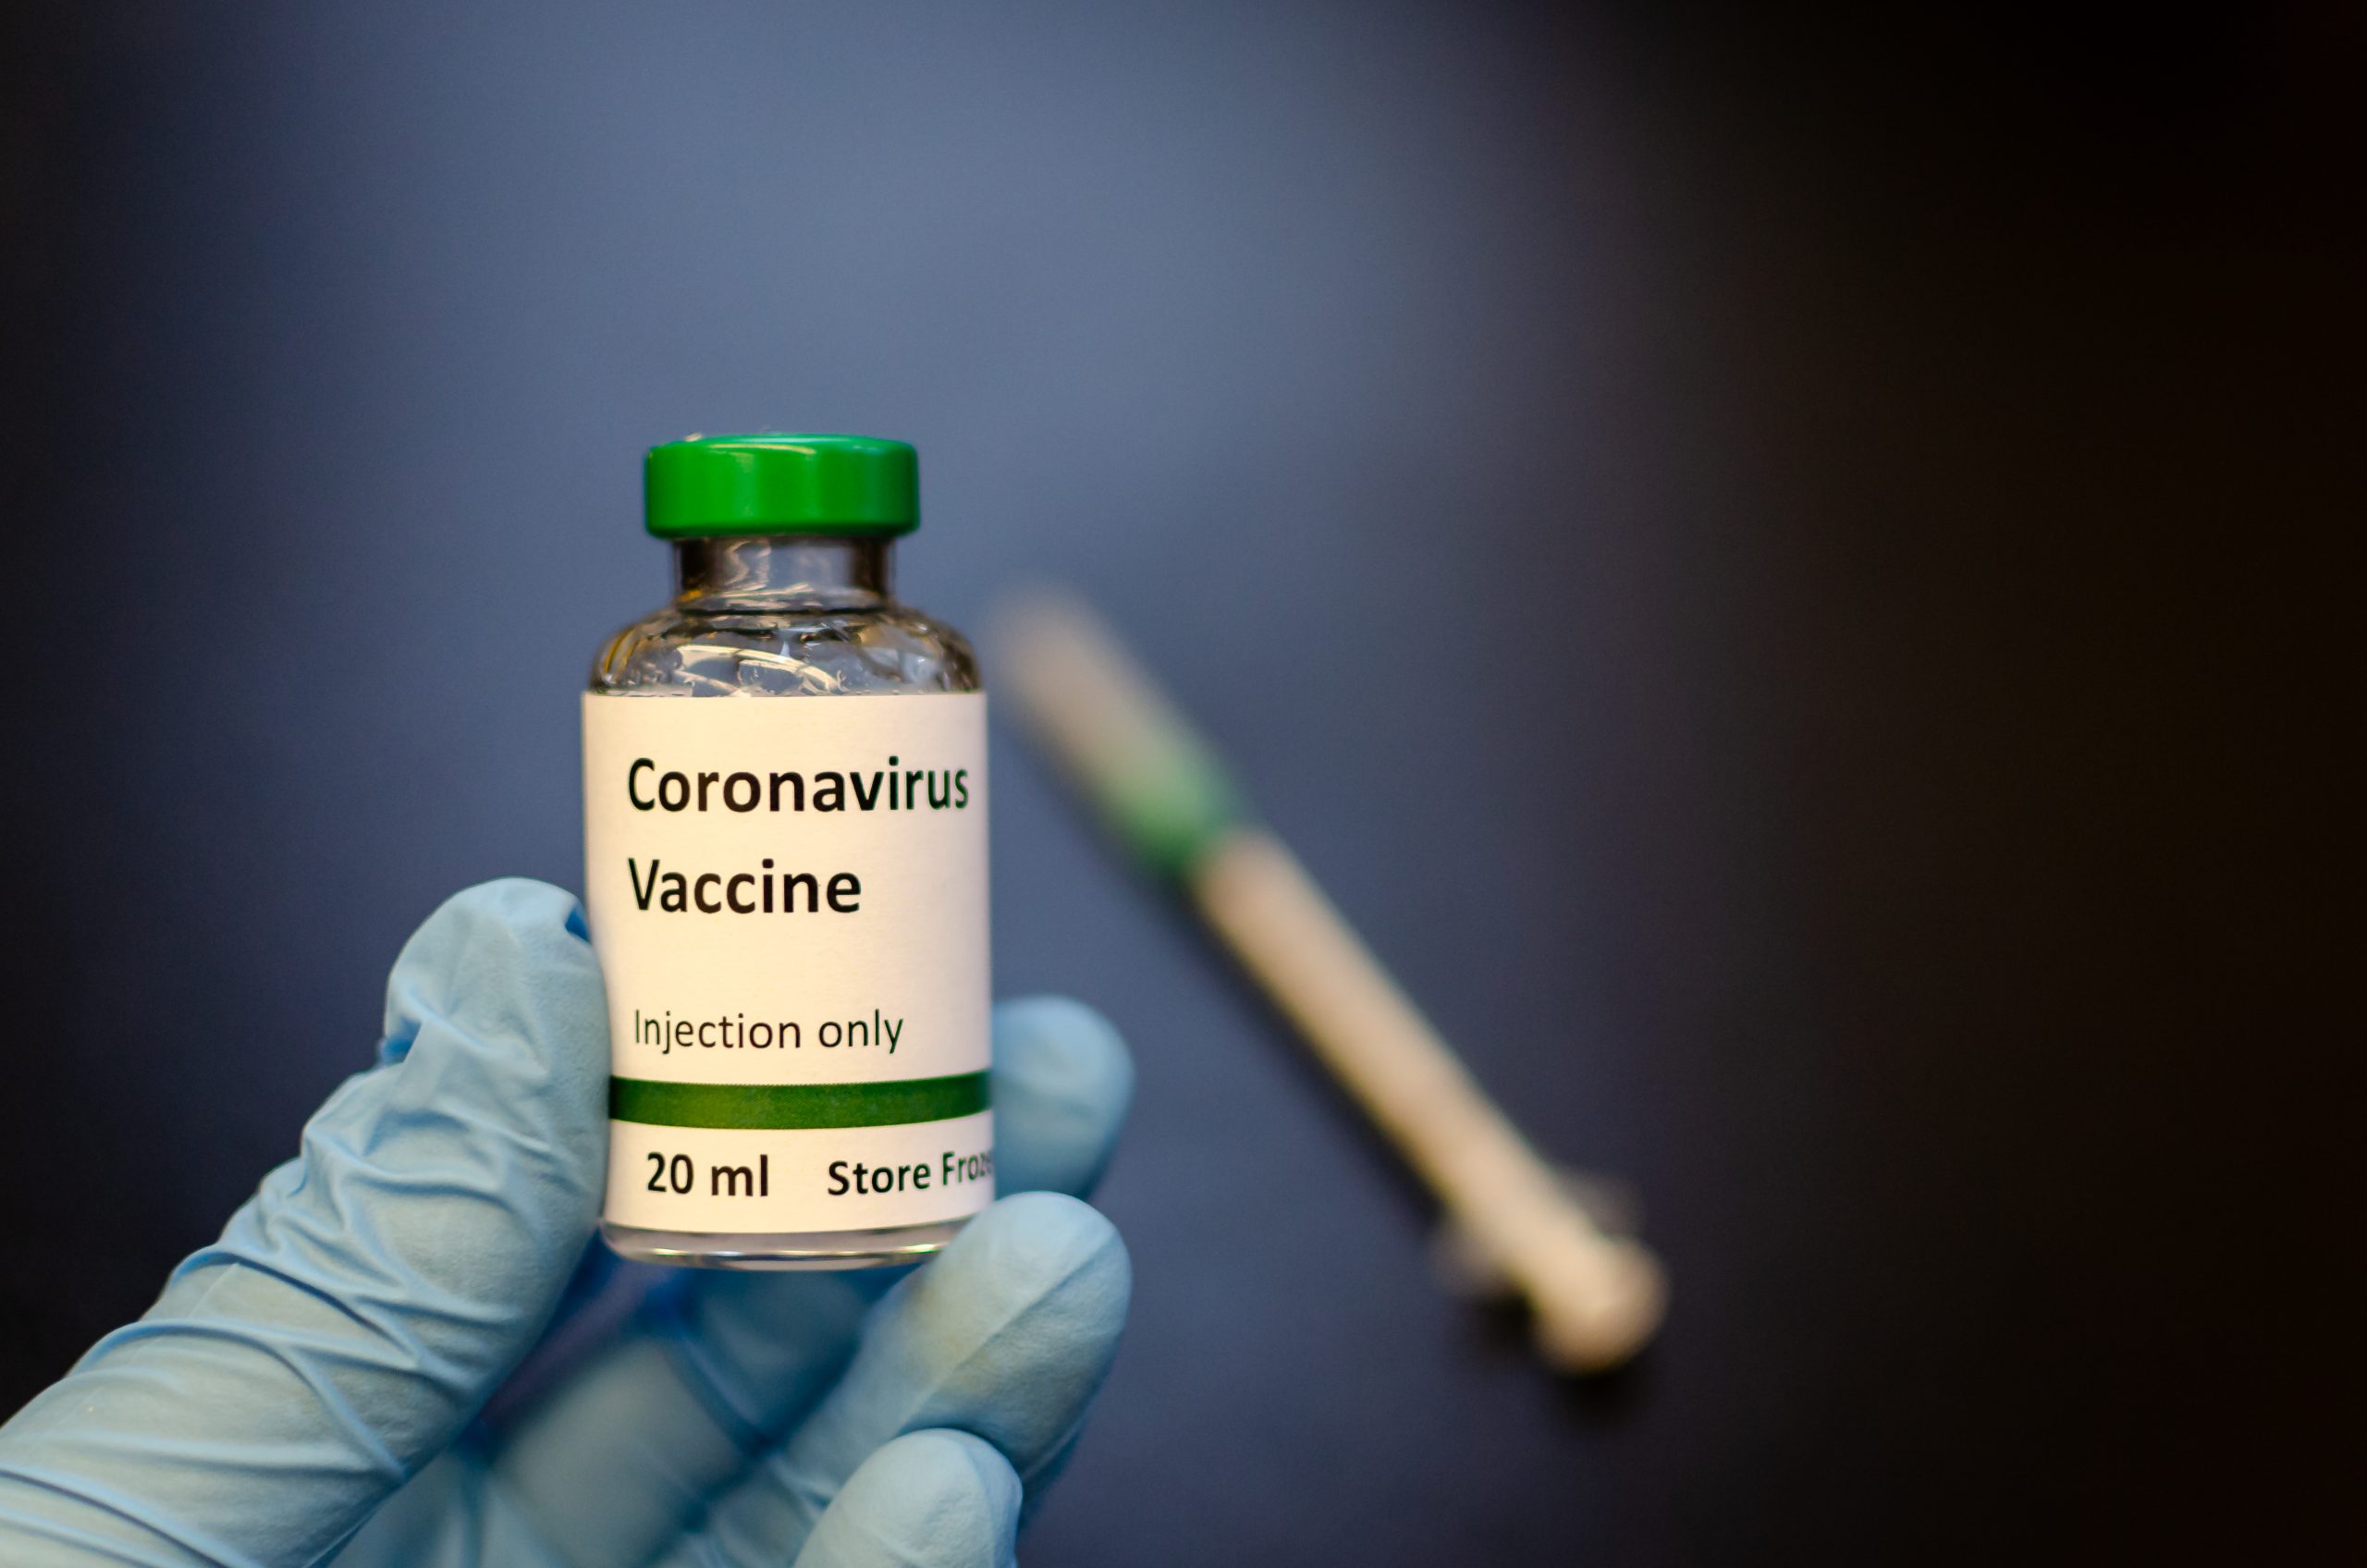 بدء اختبارات لقاح فيروس كورونا على الفئران - طريقة فعالة وآمنة لوقف انتشار فيروس كورونا الجديد - لقاح الفيروس الجديد الذي ظهر في الصيين